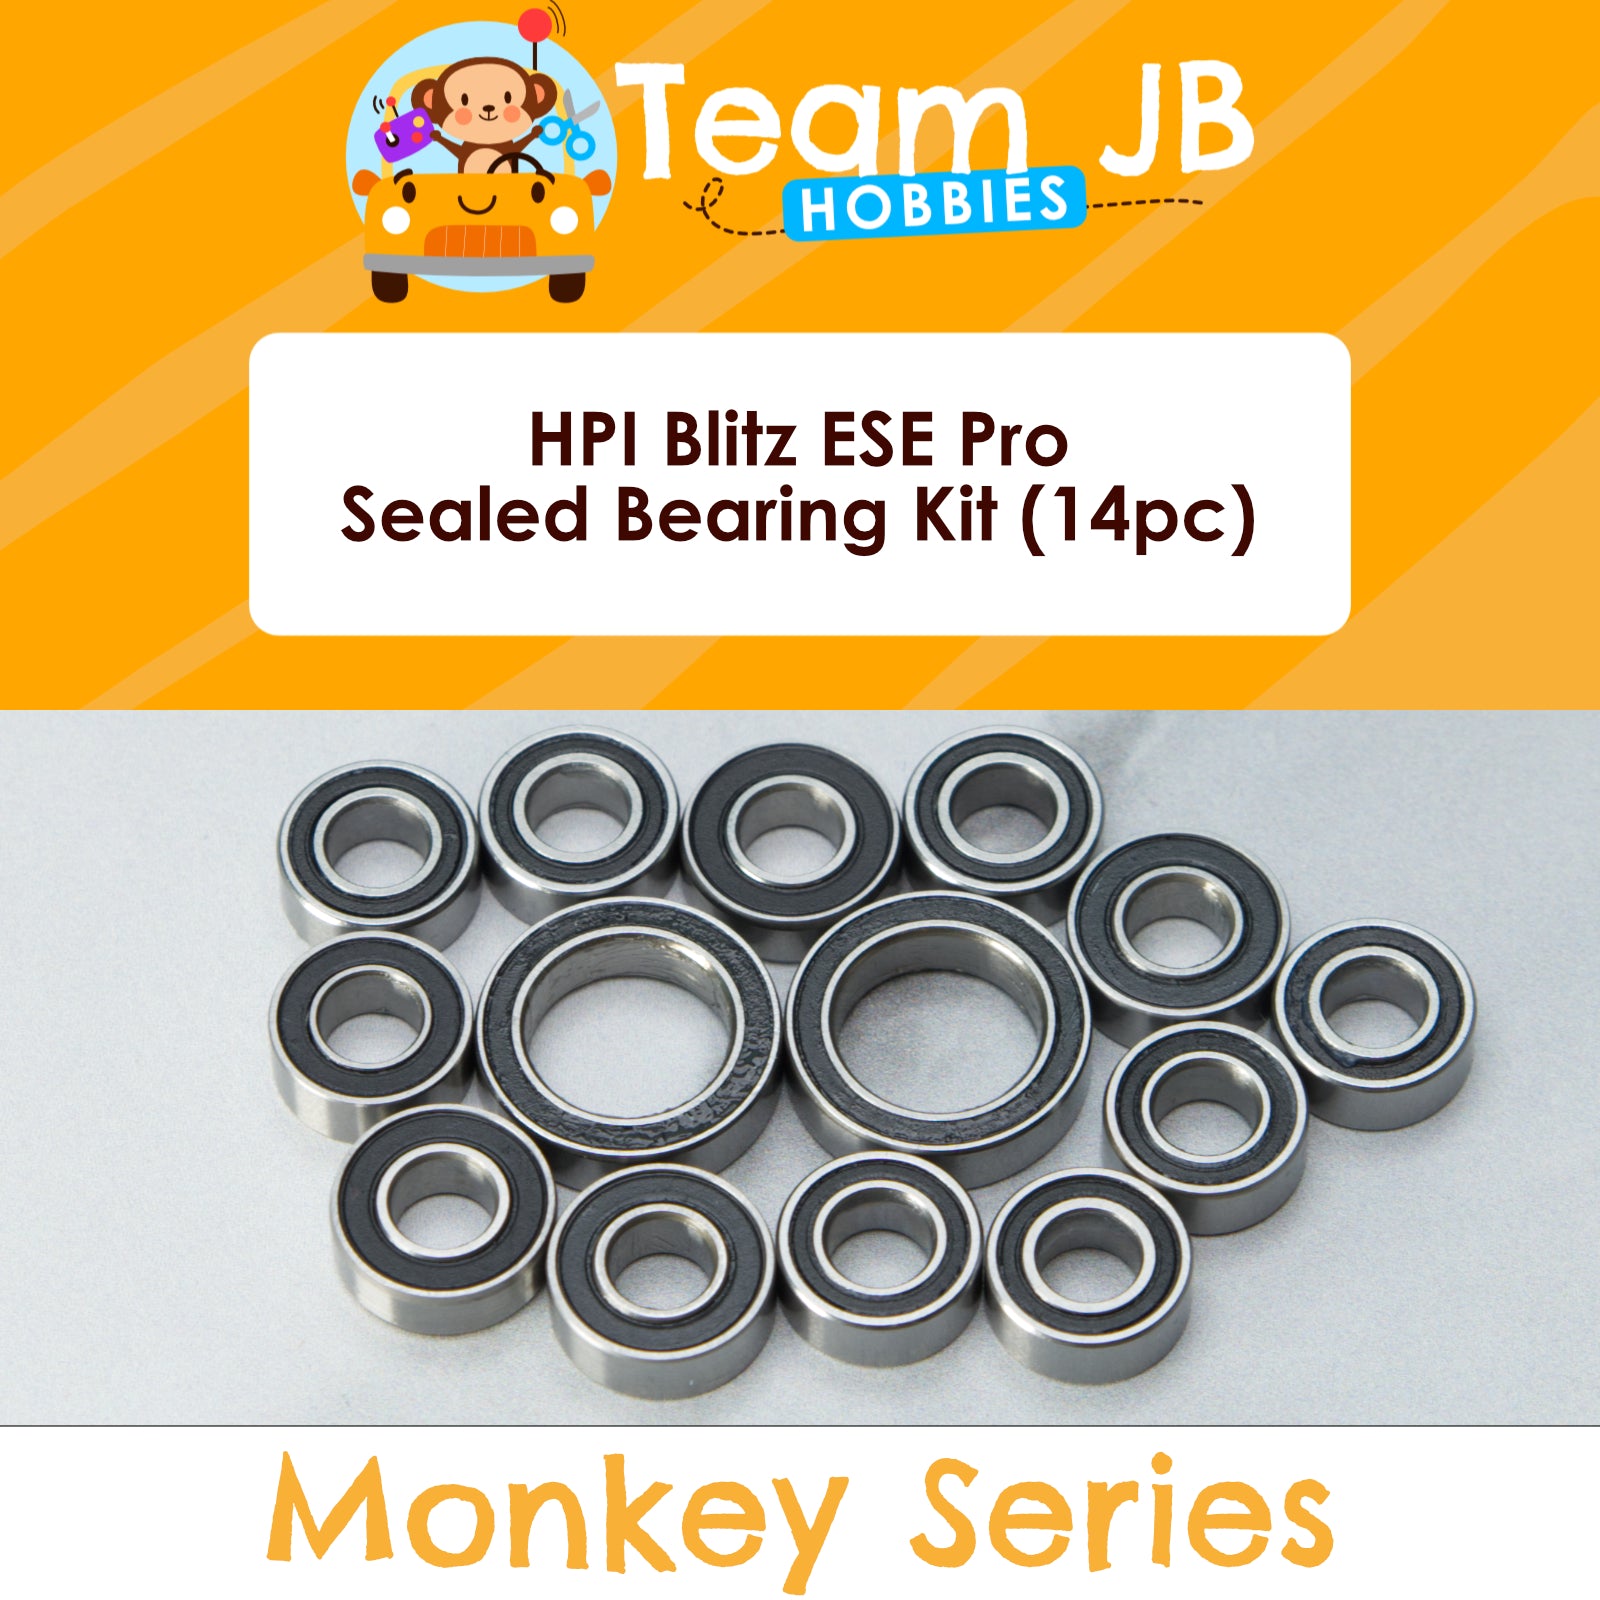 HPI Blitz ESE Pro - Sealed Bearing Kit